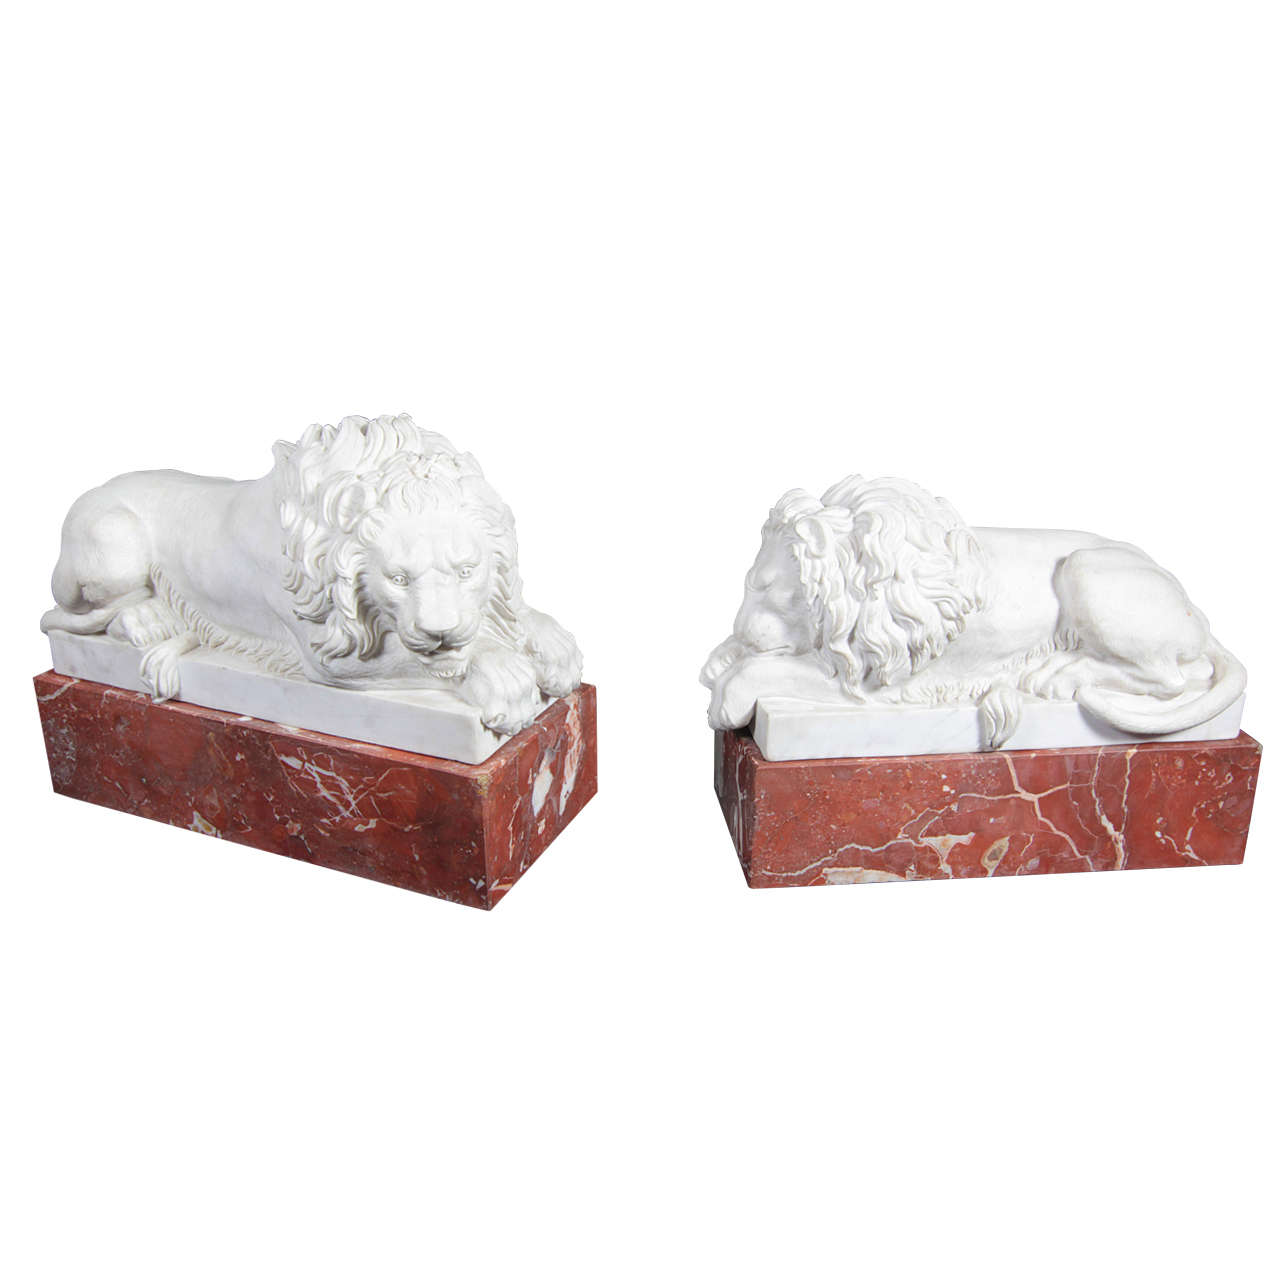 Paire de lions couchés en marbre de Carrare sur socles en marbre de jaspe, d'après Canova